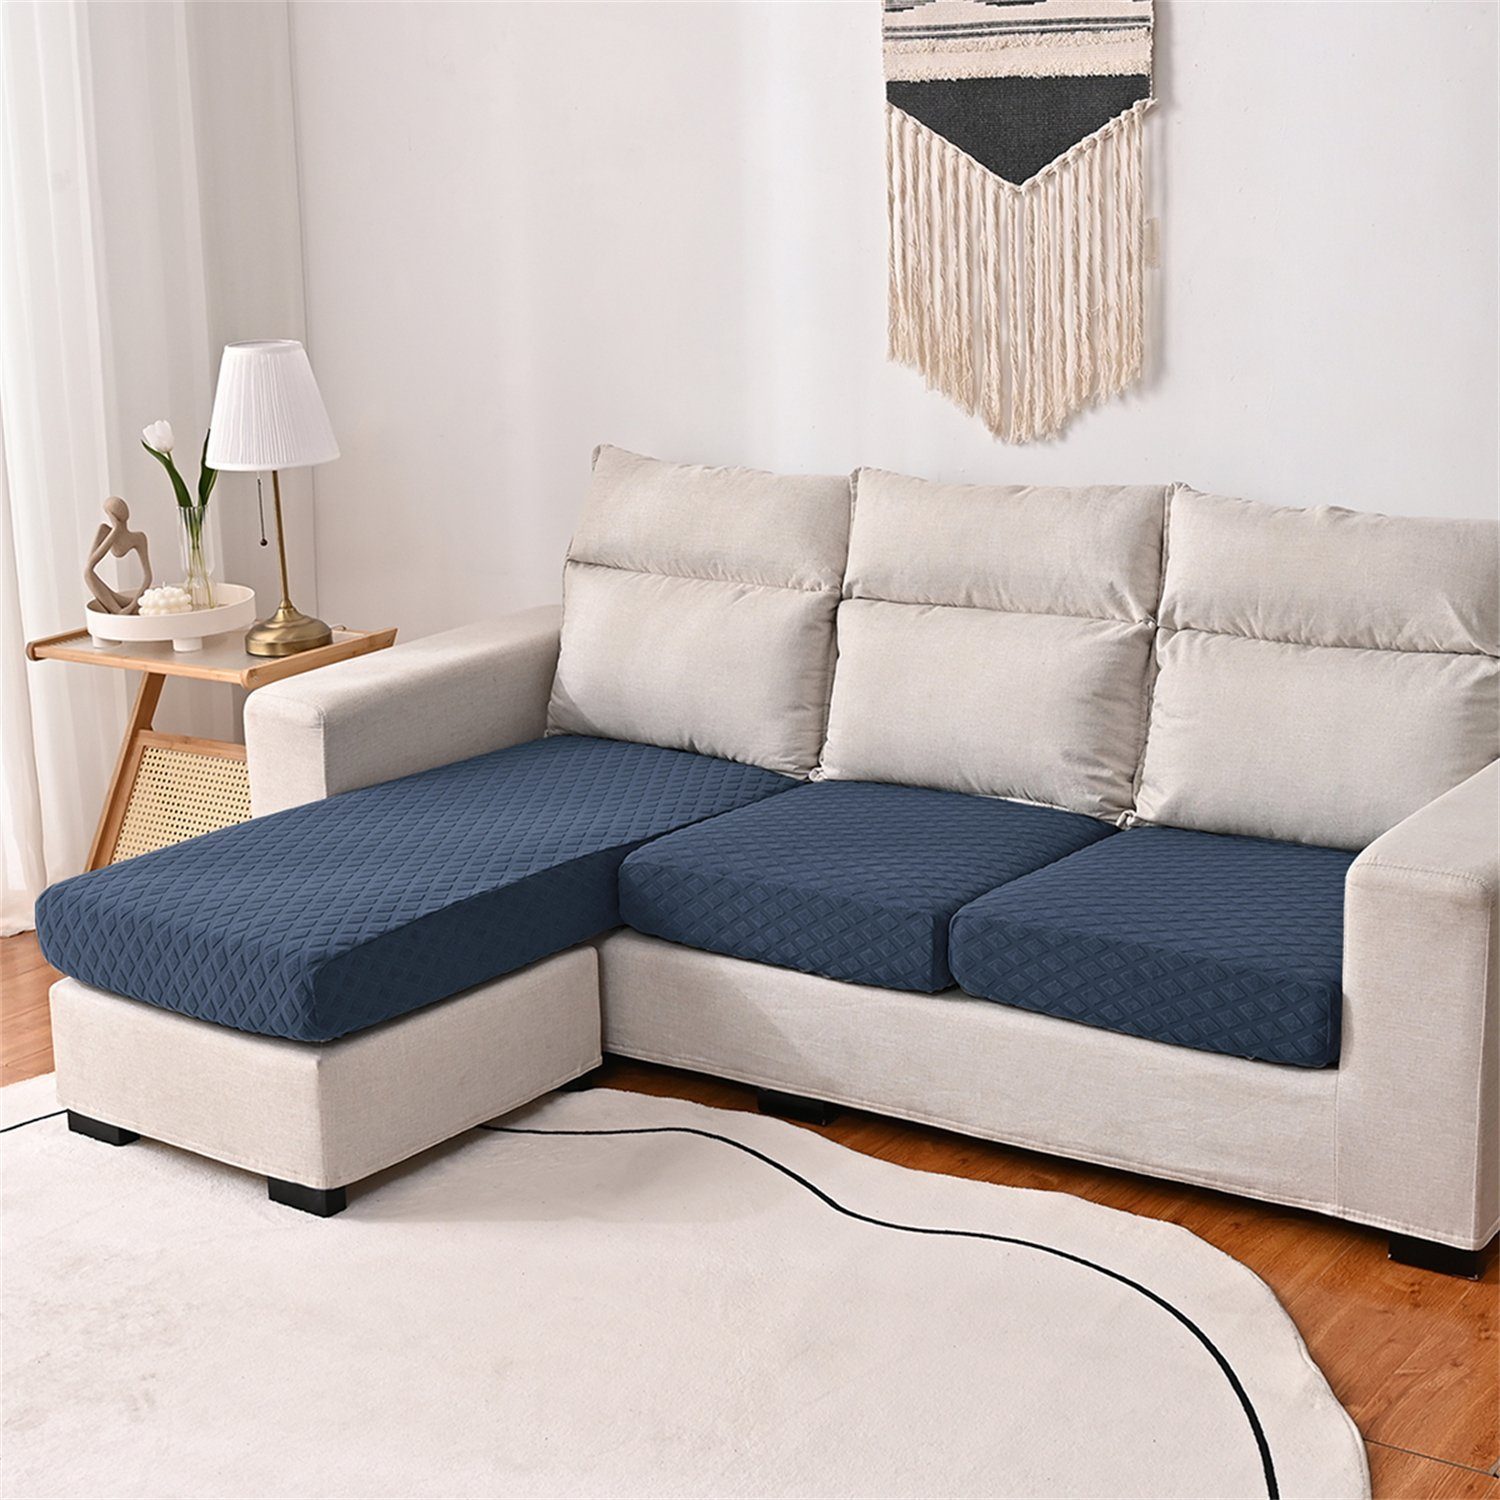 Sofahusse, HOMEIDEAS, wasserfest elastischer Sofa-Sitzbezug Navy Blau 3DMuster mit